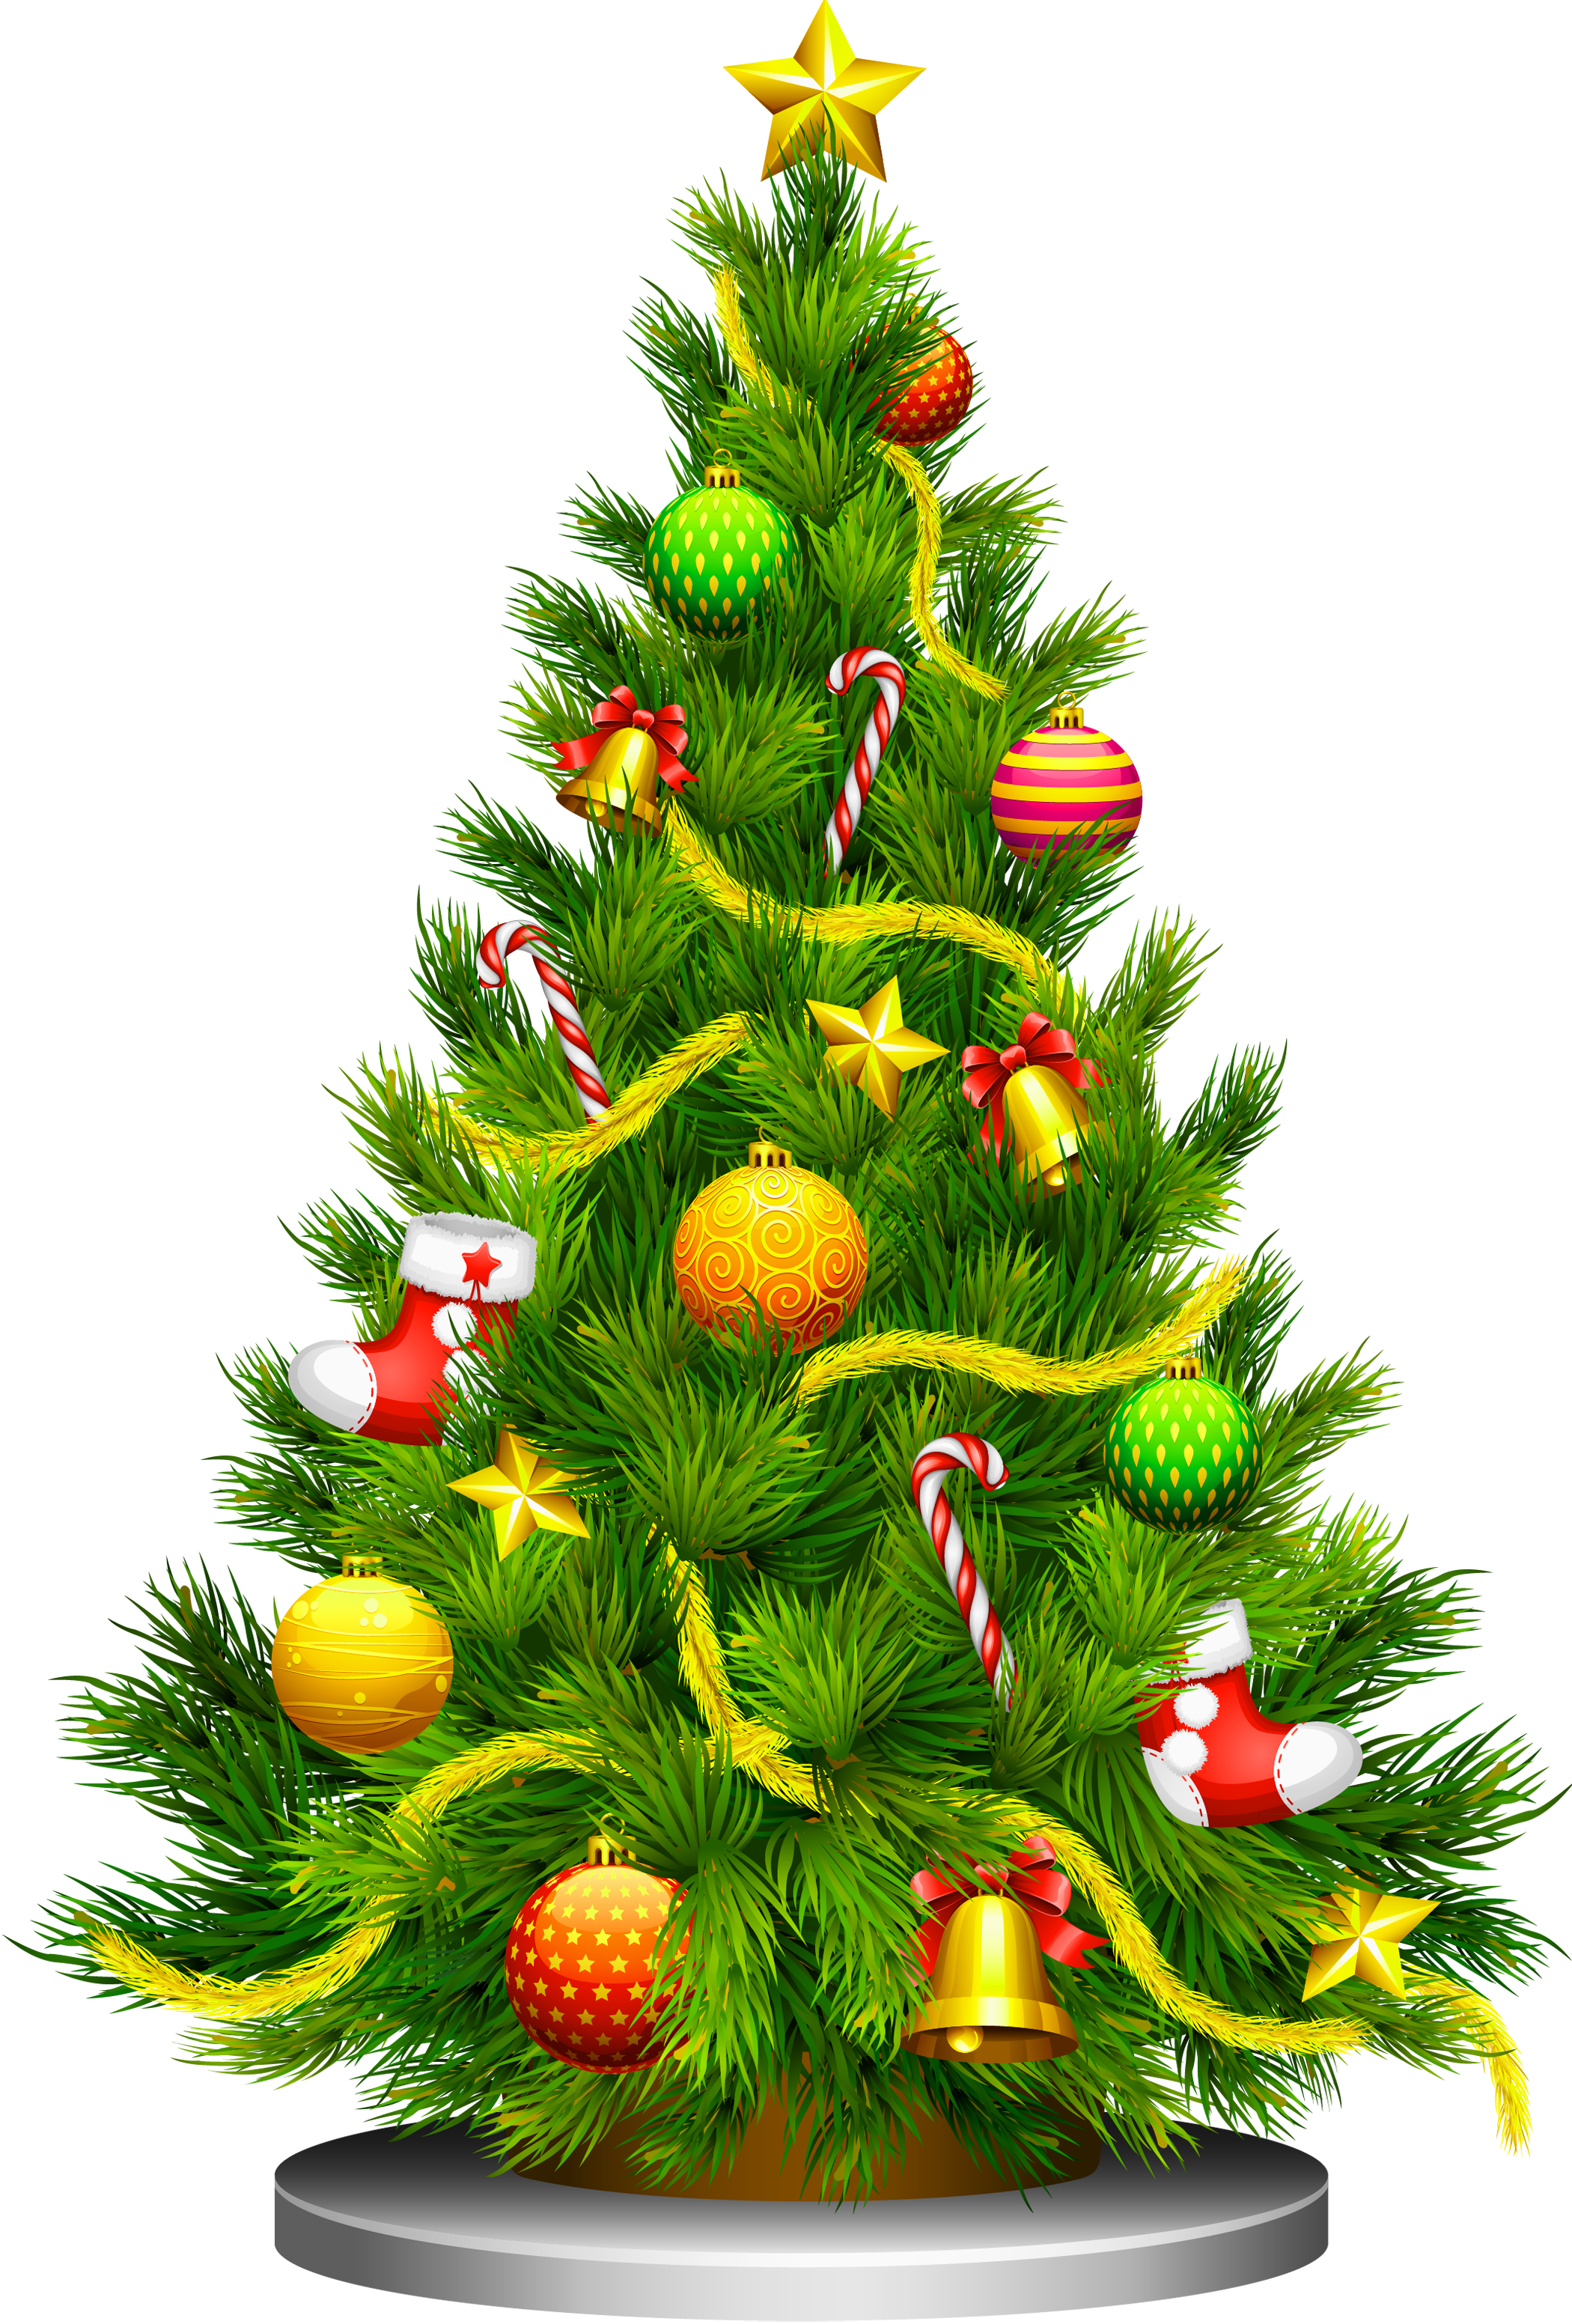 christmas tree Large Image. Christmas tree clipart, Christmas tree picture, Christmas tree with presents